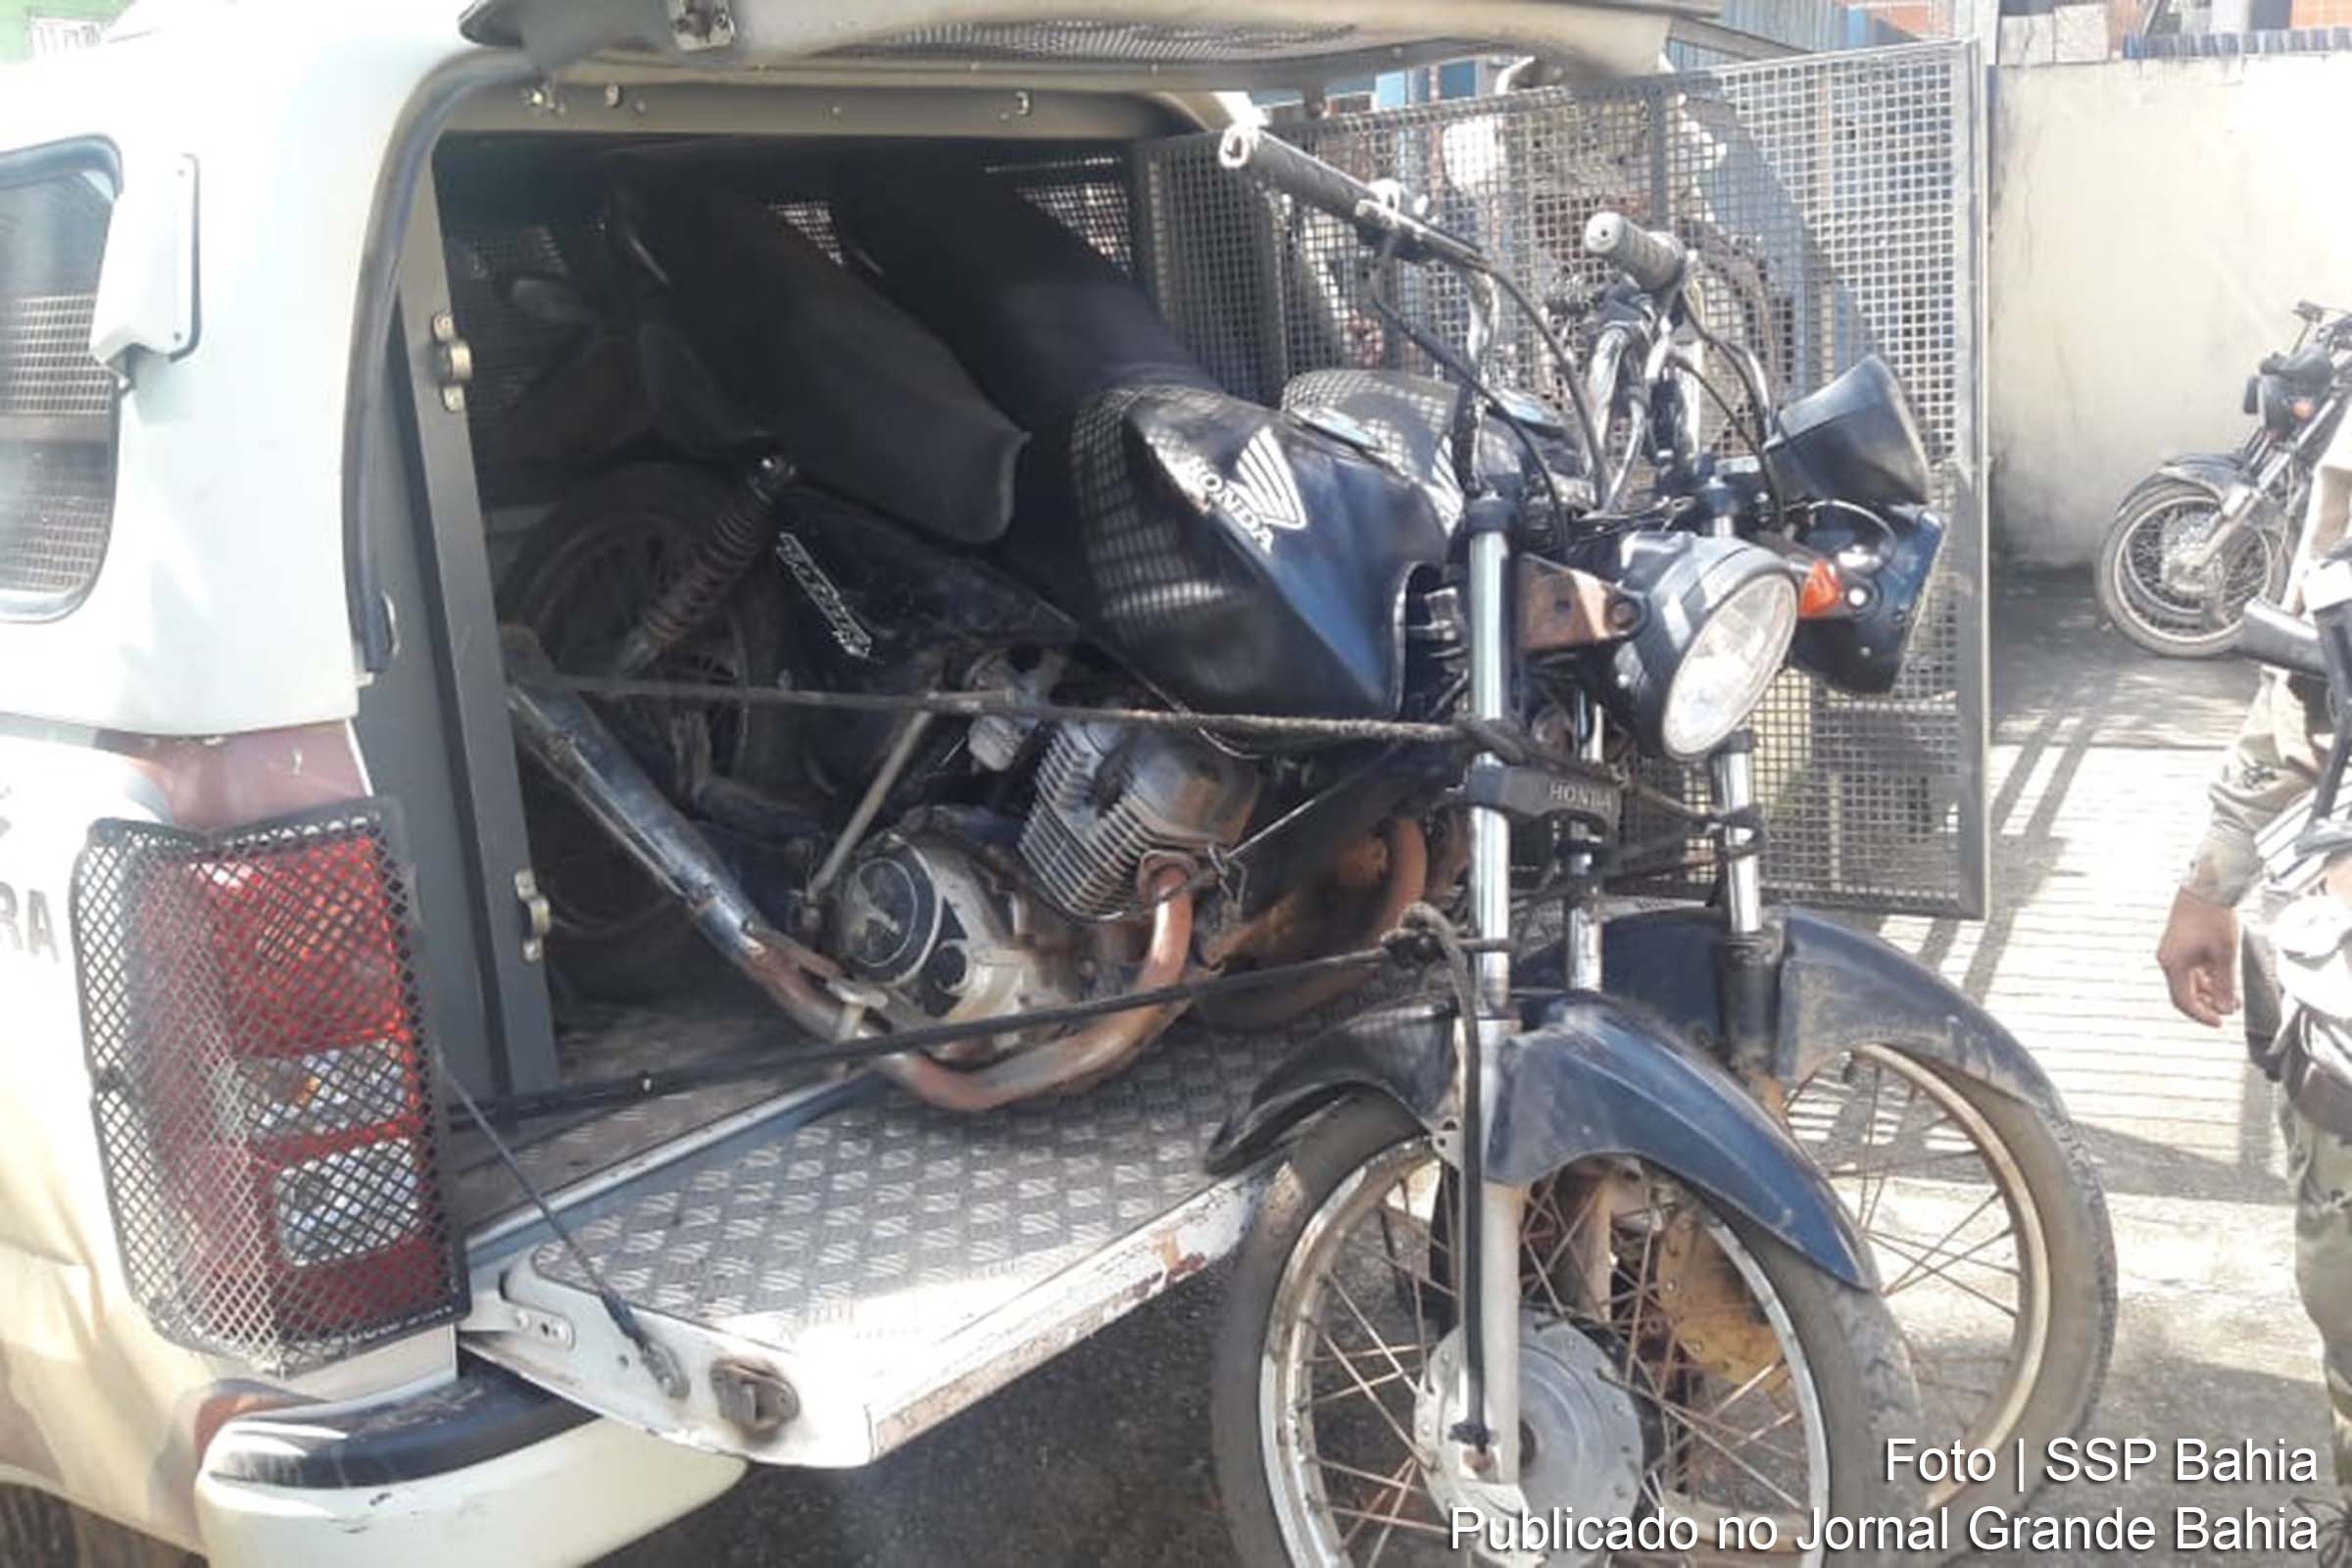 Militares recuperam duas motocicletas com chassis adulterados e sem placas